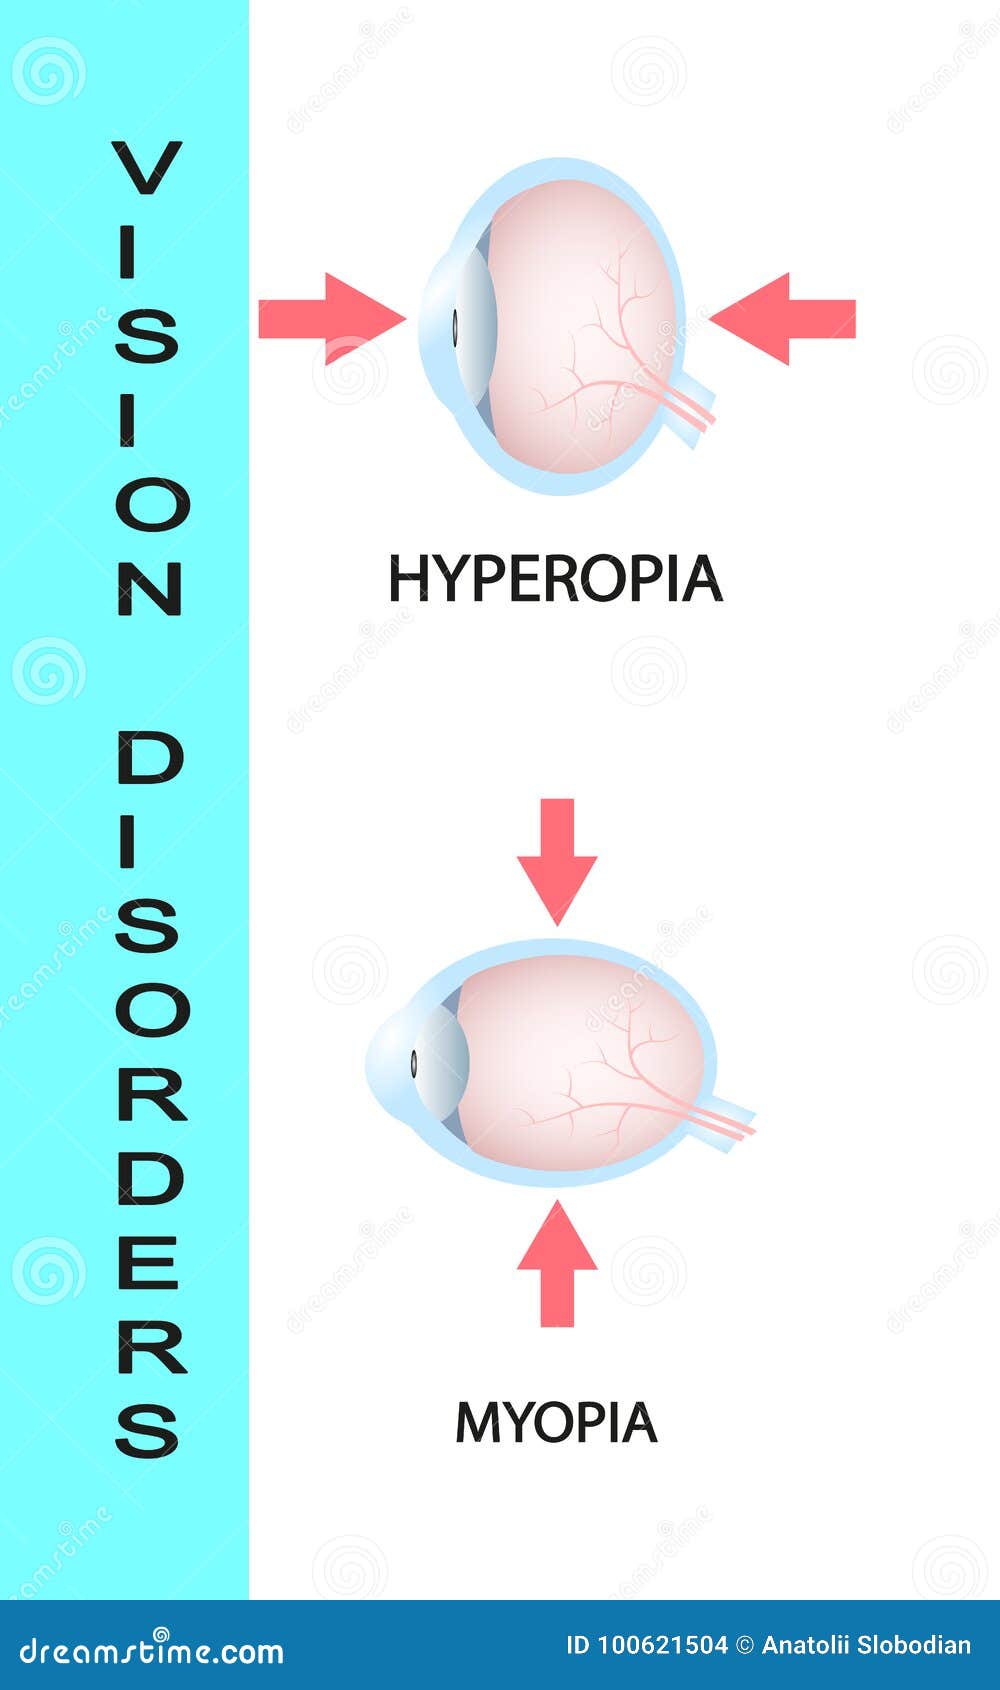 Távollátás (hypermetropia) Hyperopia plus